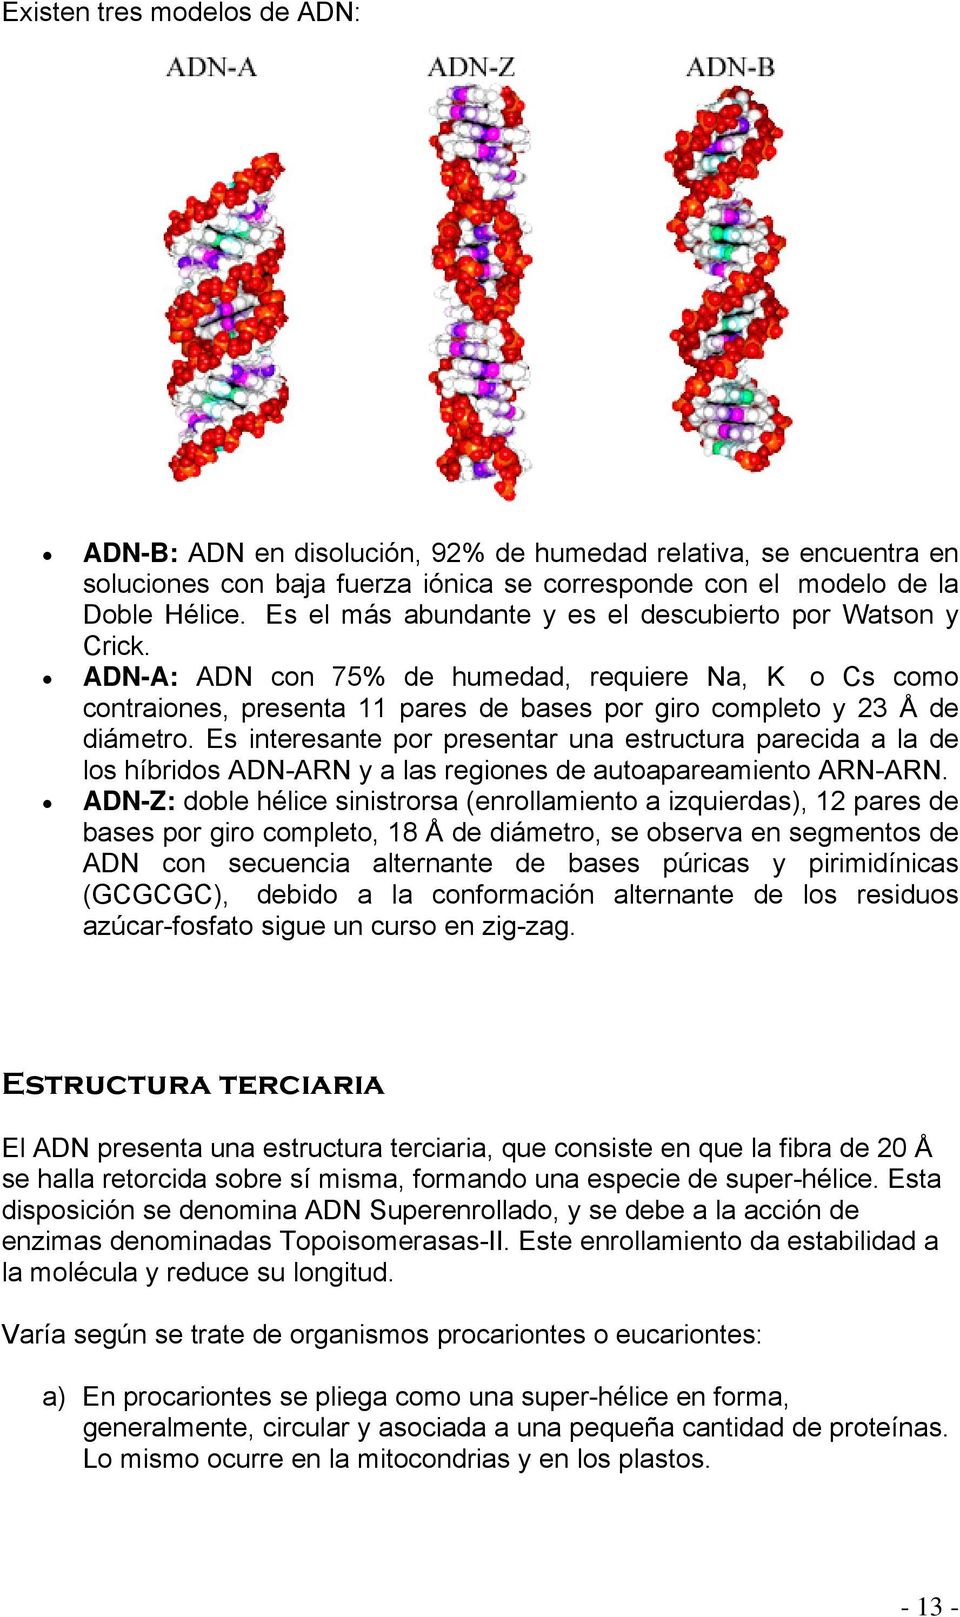 Es interesante por presentar una estructura parecida a la de los híbridos ADN-ARN y a las regiones de autoapareamiento ARN-ARN.